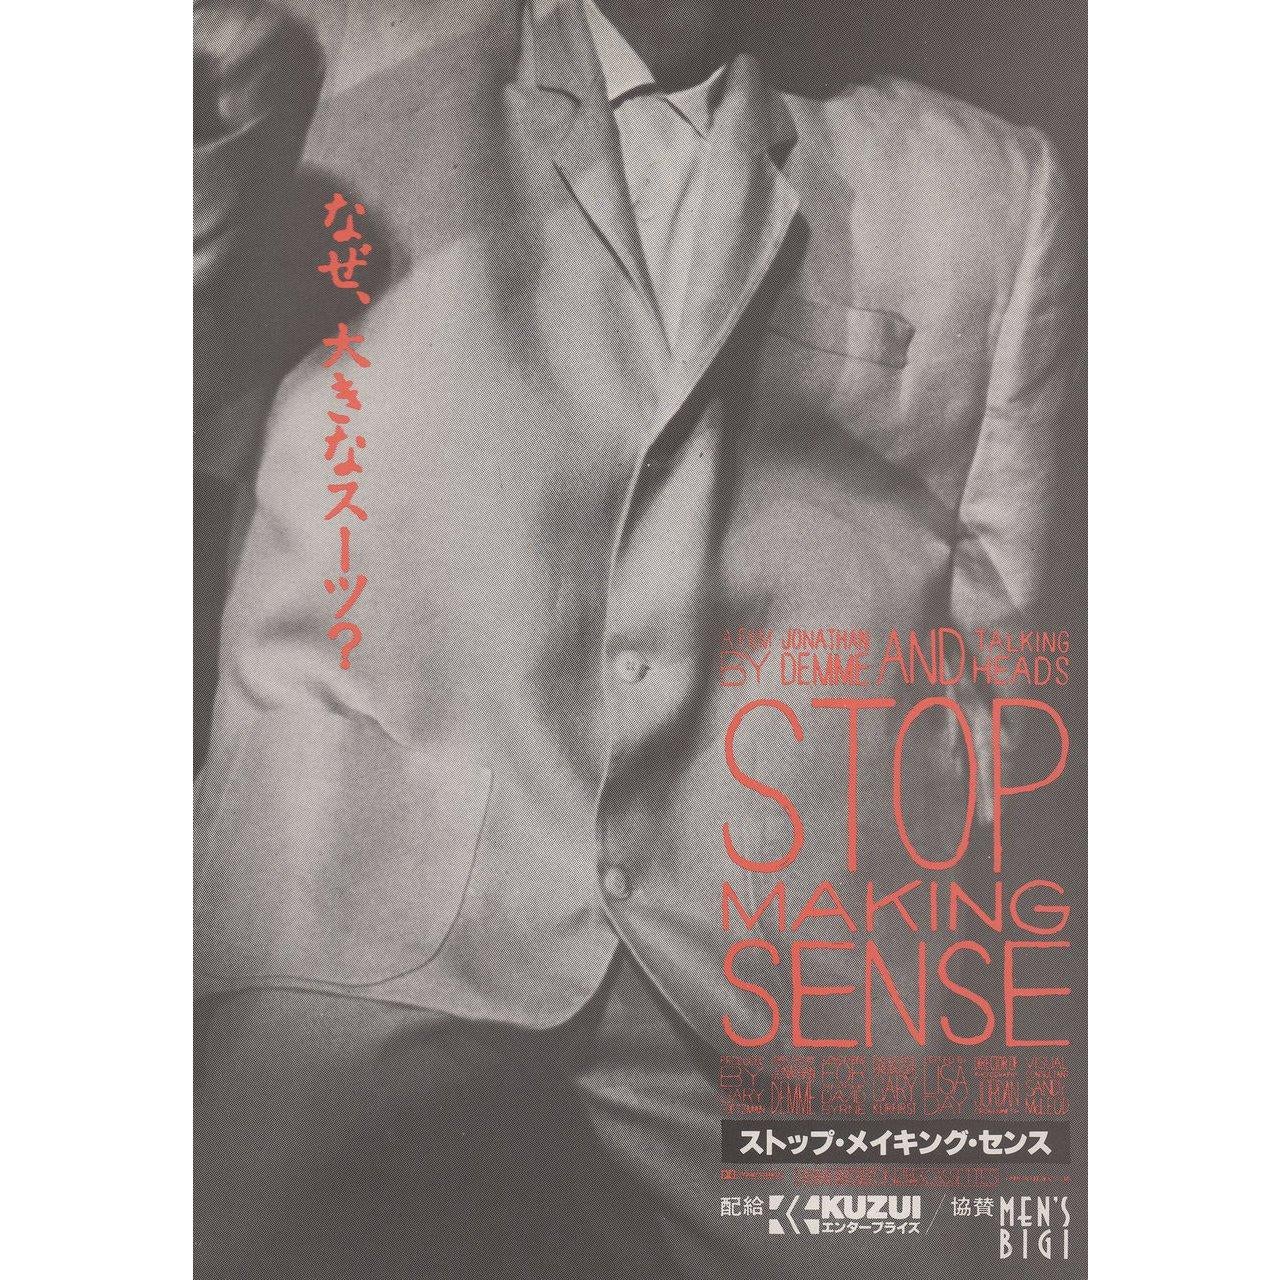 Dépliant chirashi B5 japonais original de 1984 pour le film documentaire Stop Making Sense réalisé par Jonathan Demme avec David Byrne / Bernie Worrell / Alex Weir / Steven Scales / Lynn Mabry. Bon état, roulé. Veuillez noter que la taille est